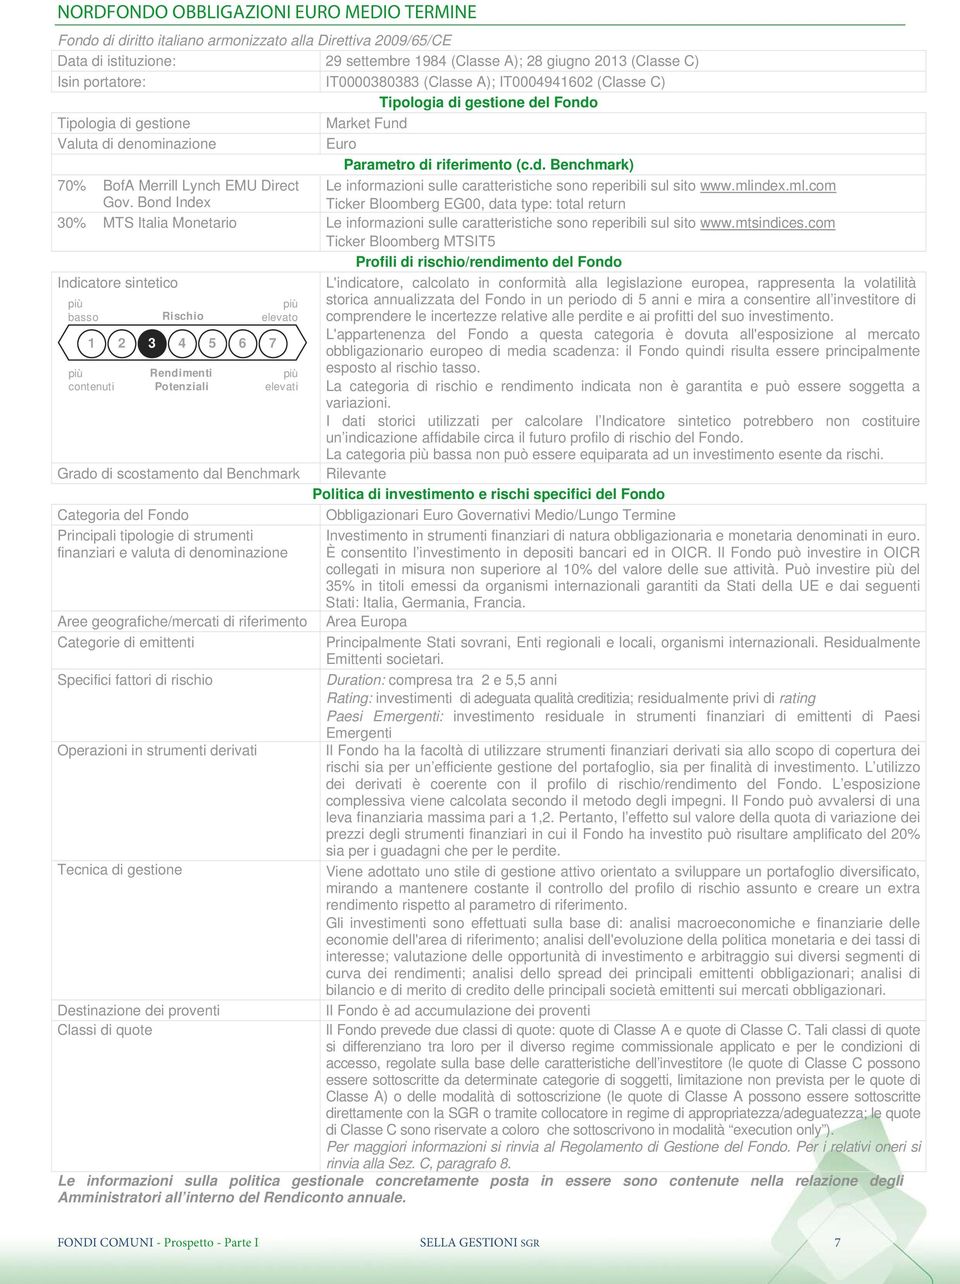 ndex.ml.com Ticker Bloomberg EG00, data type: total return 30% MTS Italia Monetario Le informazioni sulle caratteristiche sono reperibili sul sito www.mtsindices.